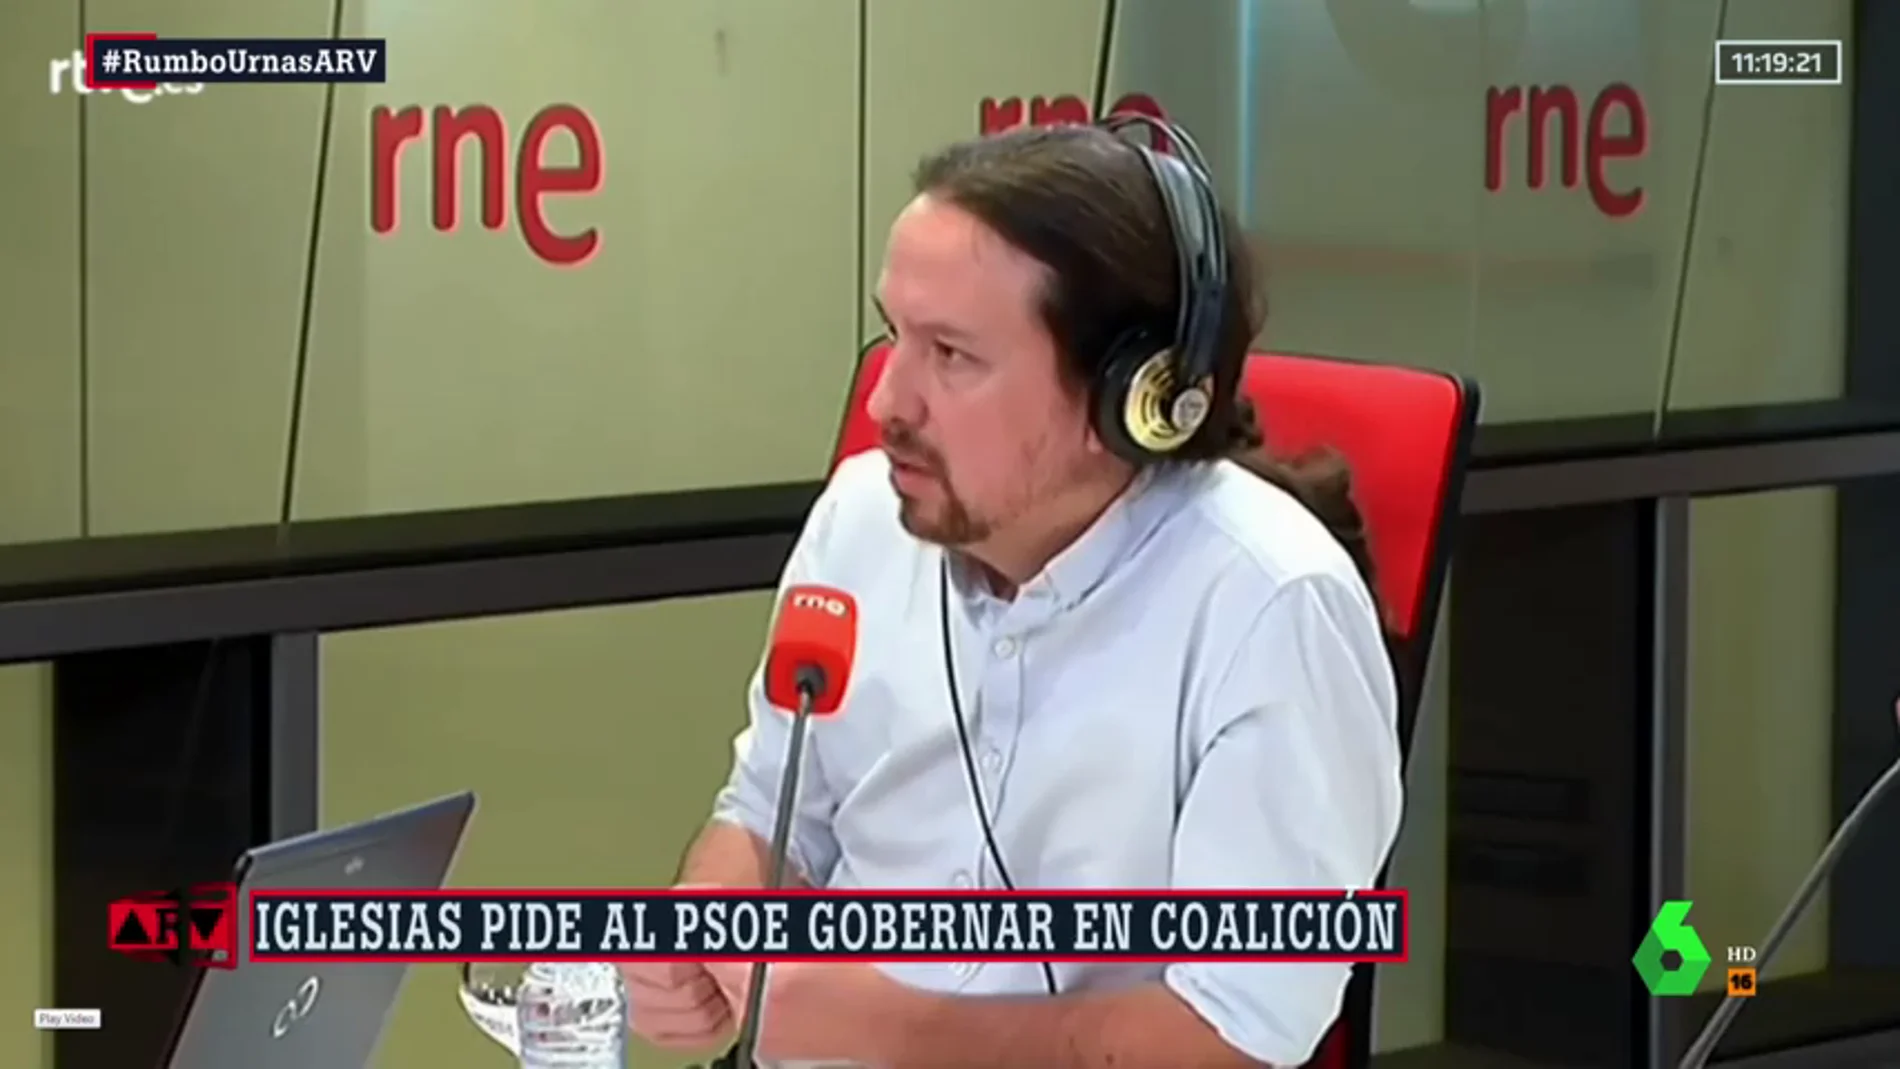  Iglesias pide al PSOE gobernar en coalición y Ábalos señala que sólo quieren “colaboración” con Podemos